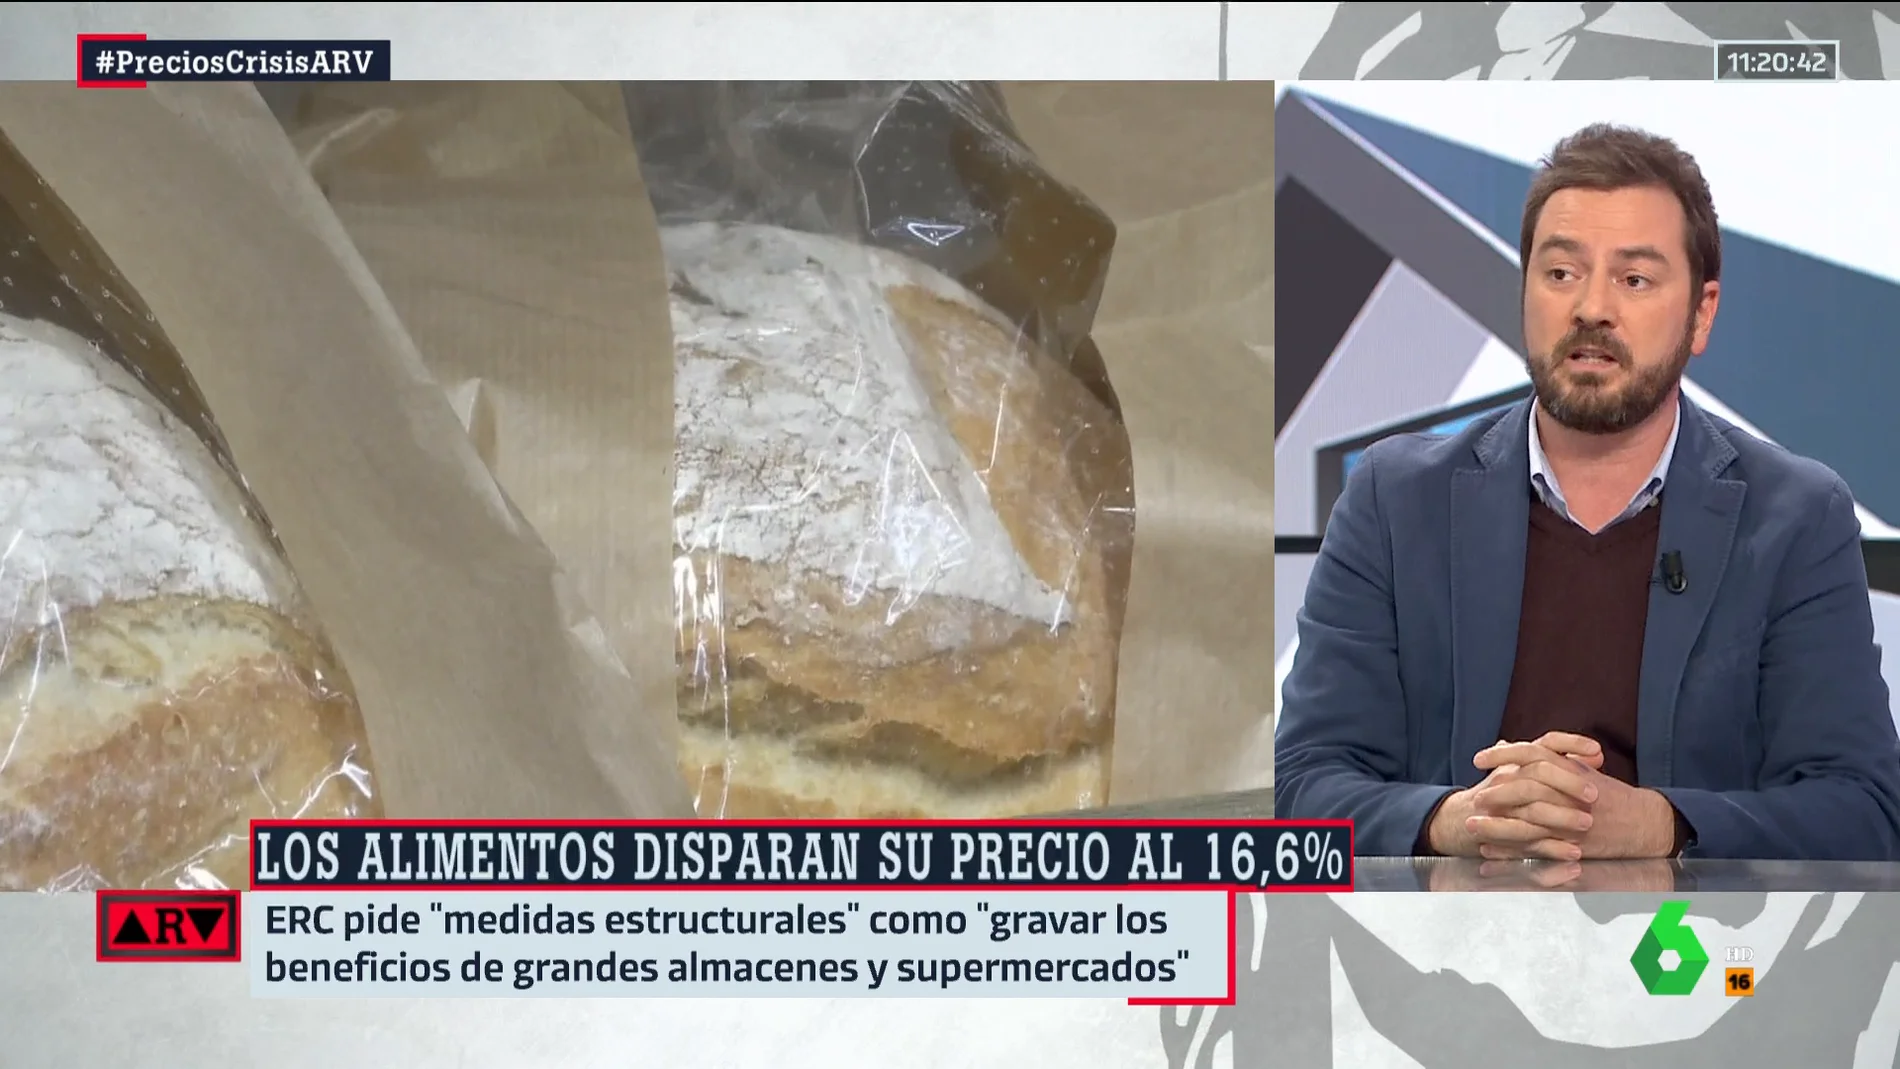  Jorge Bustos augura "un nuevo choque de trenes dentro de la coalición" tras la subida del precio de los alimentos